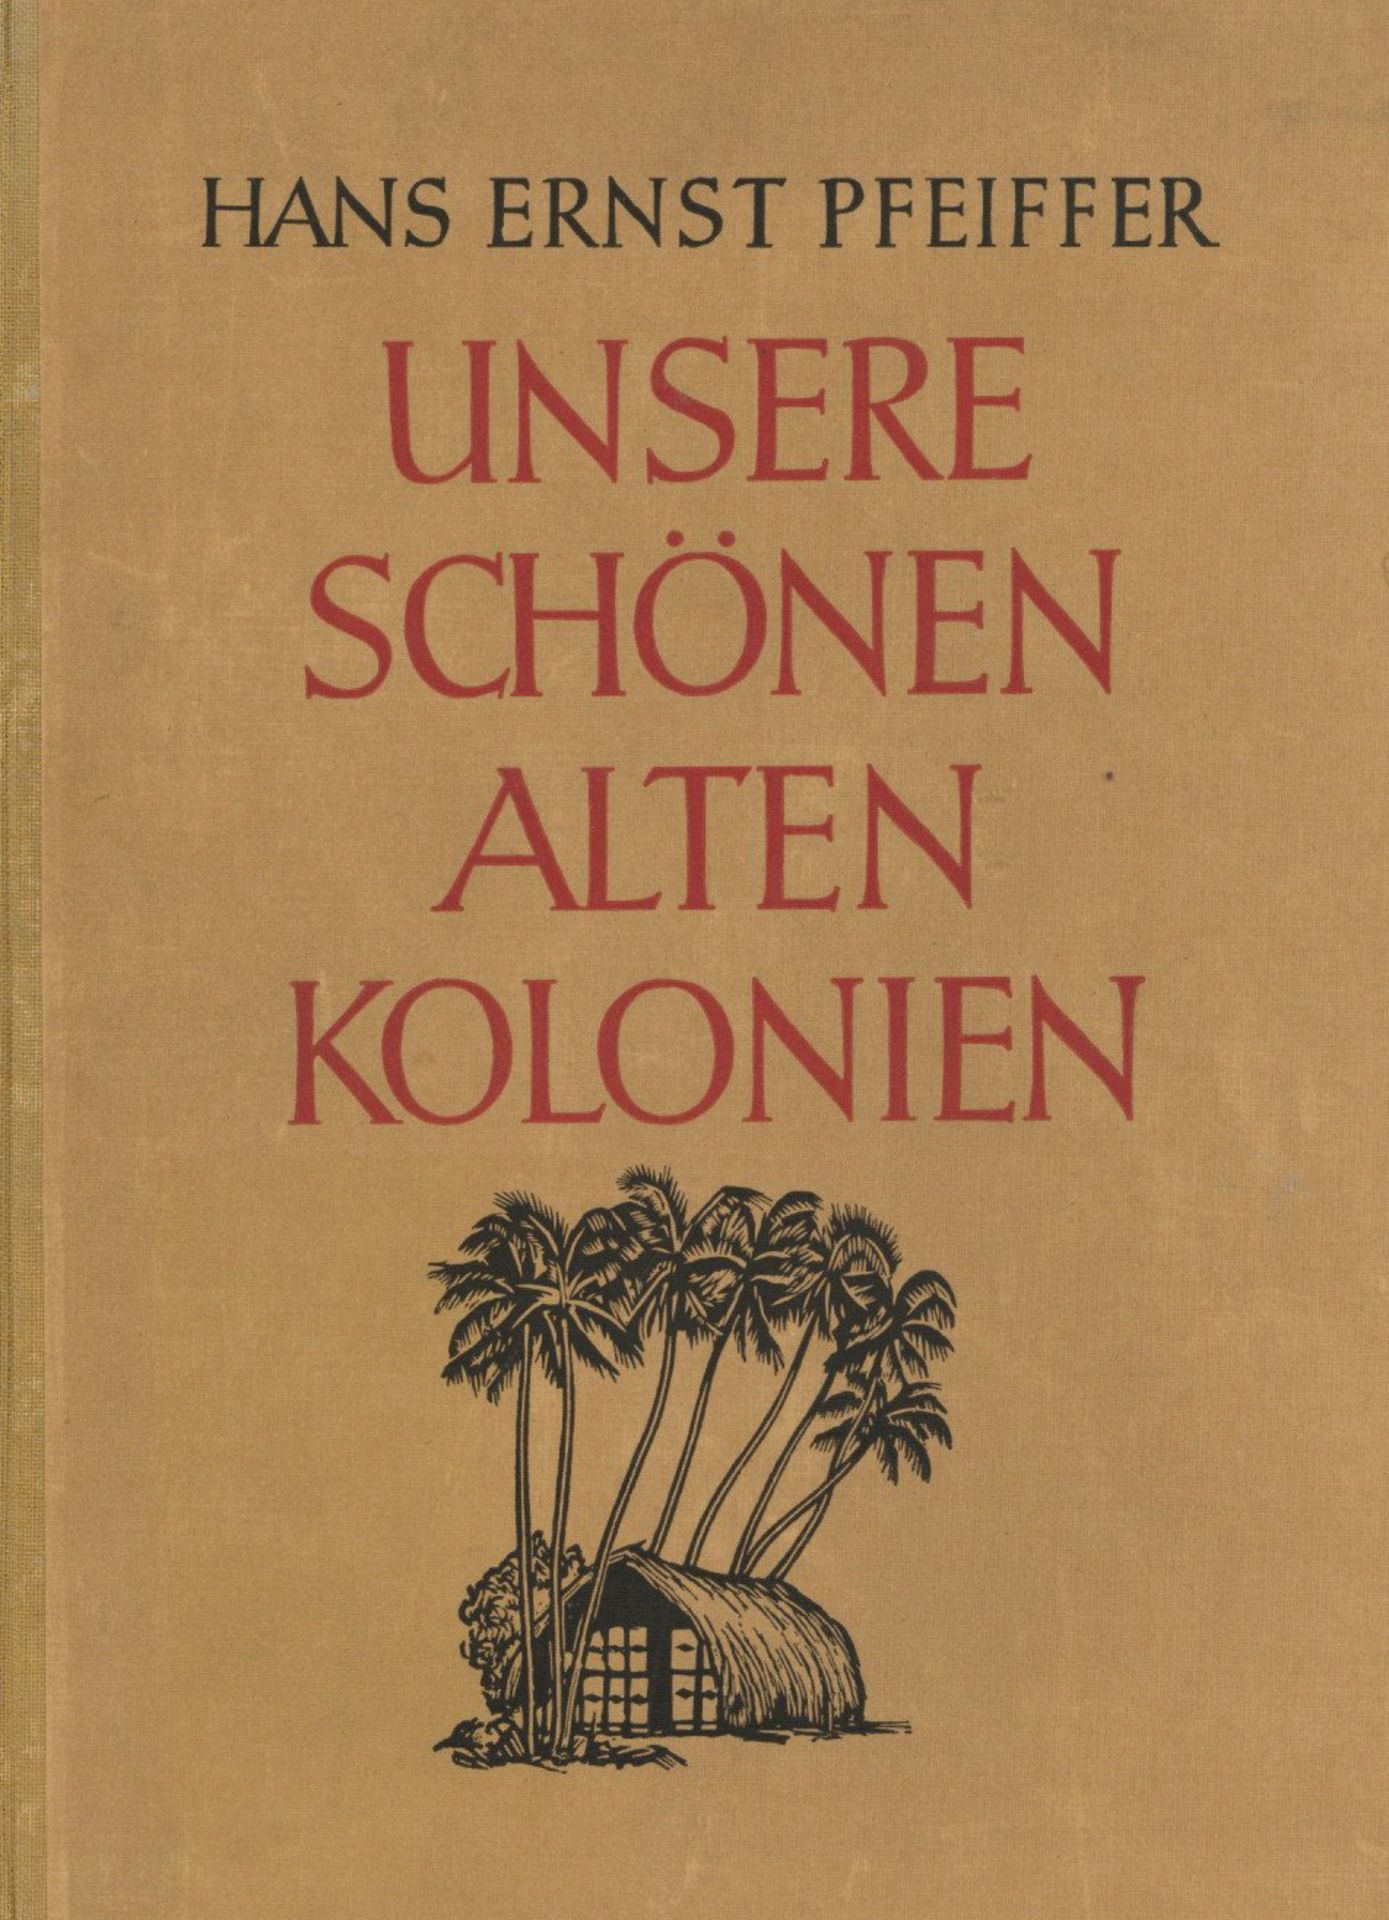 Buch Kolonien Unsere Schönen Alten Kolonien von Pfeiffer, Hans Ernst 1941, Verlag Weller Berlin, 123